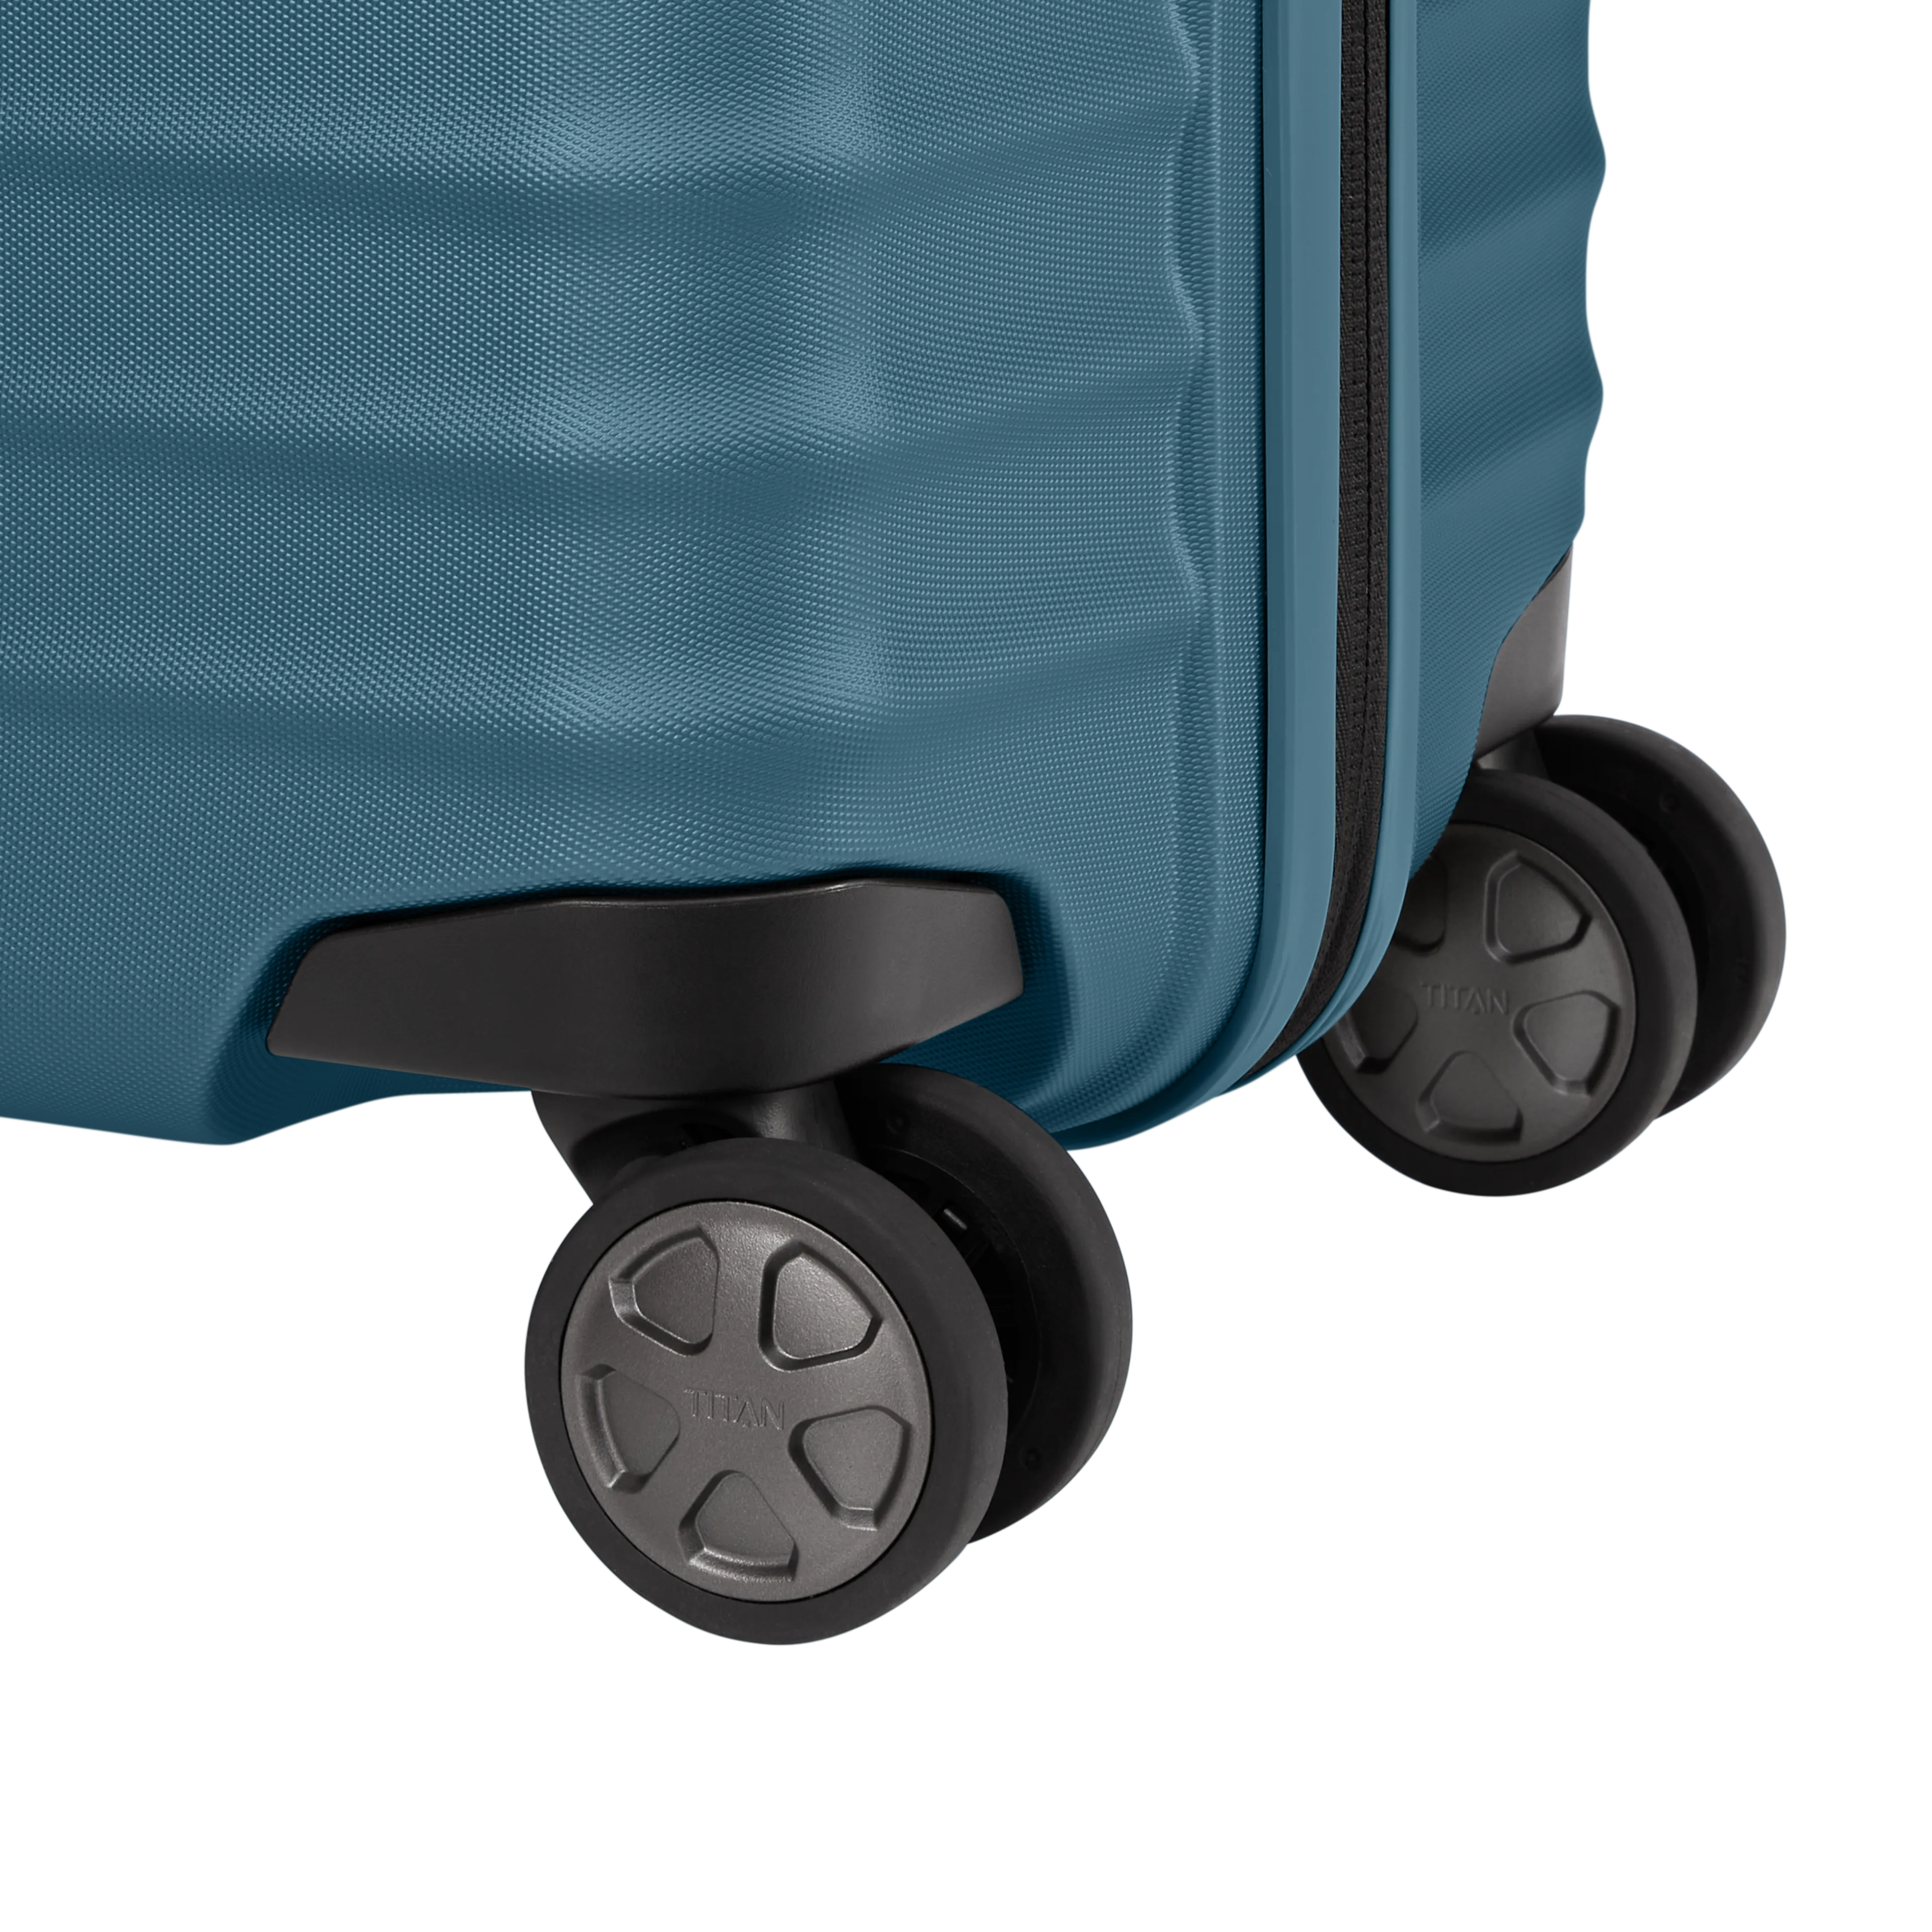 Ein TITAN Koffer der Serie LITRON Nahaufnahme Räder in petrol